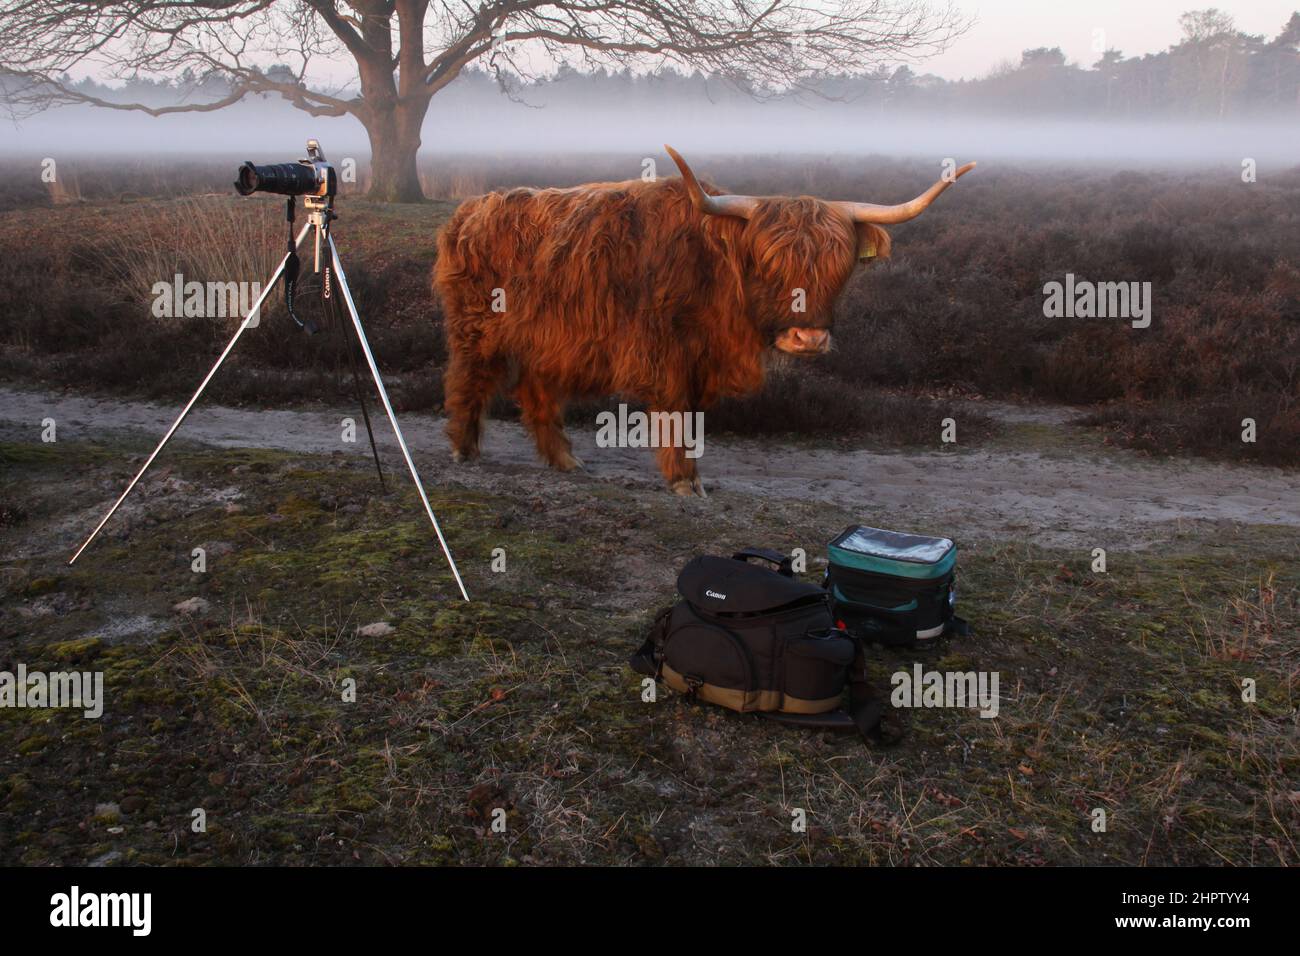 Un highlander scozzese cammina curiosamente verso le borse della fotocamera in un paesaggio mistico brughiera. Foto Stock